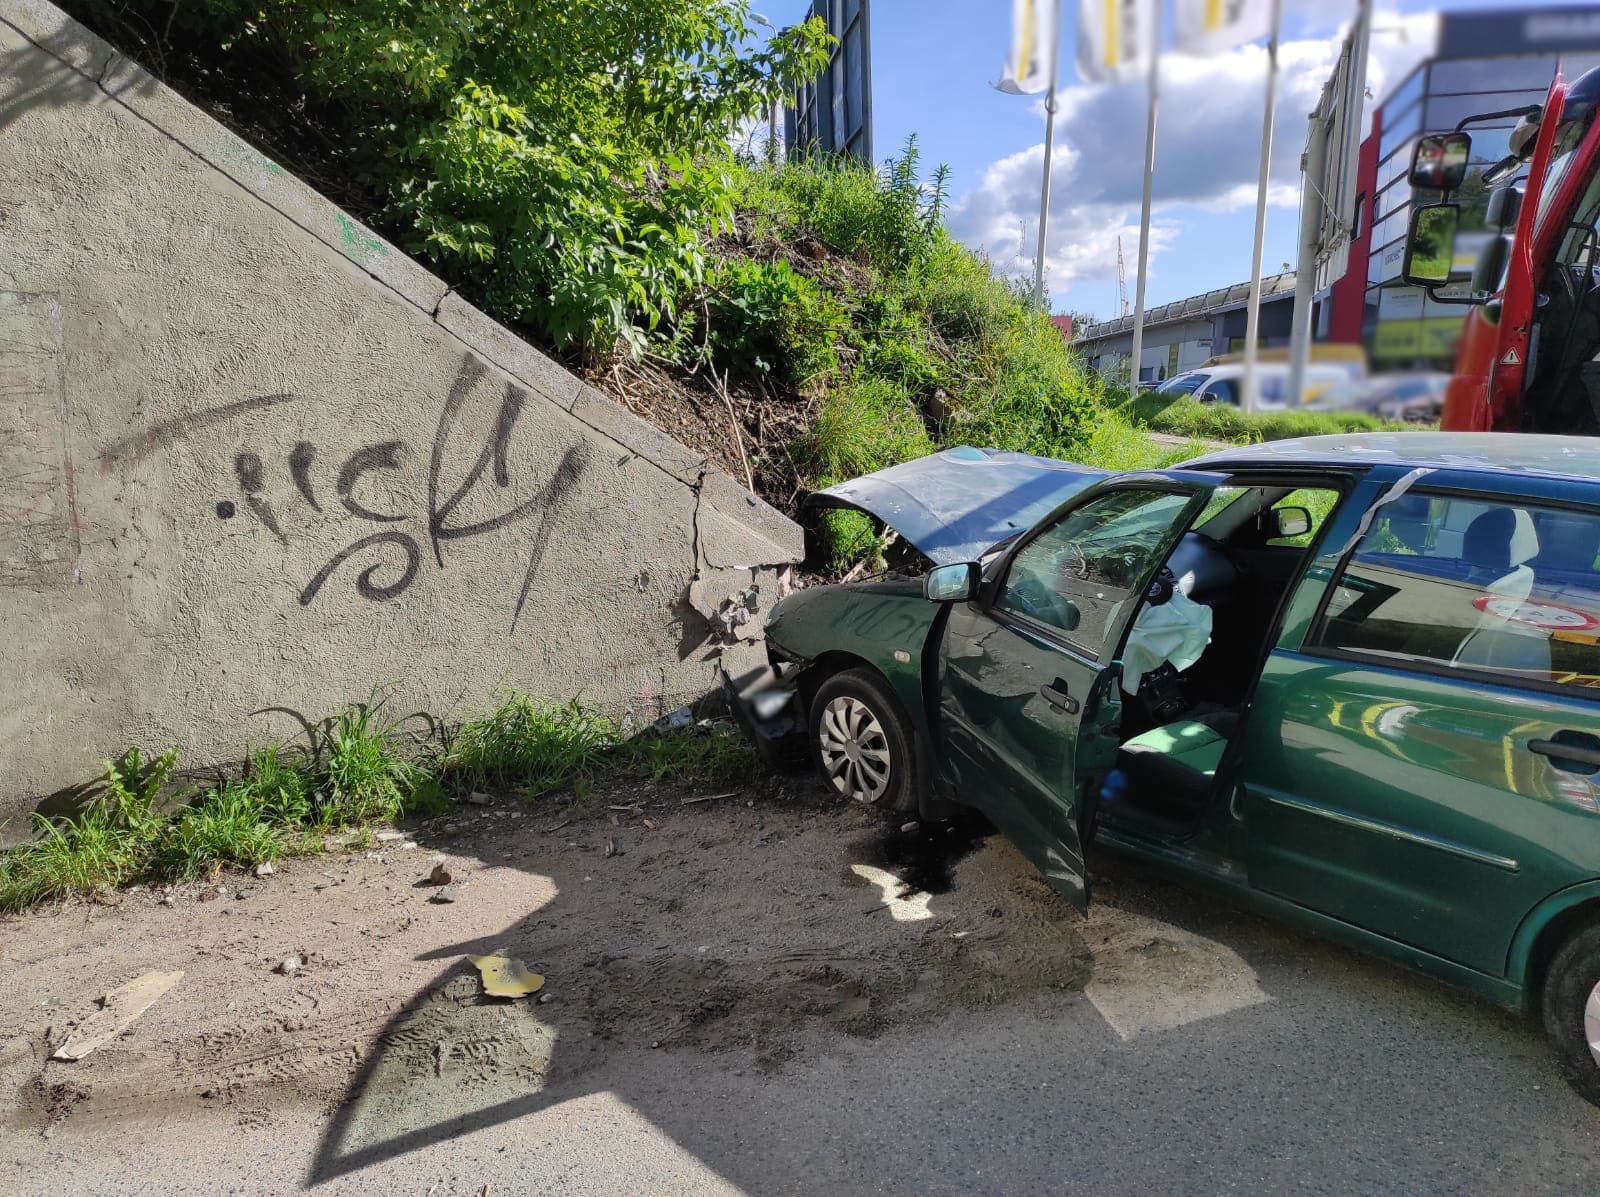 Pijany kierowca nie zauważył wiaduktu. Uderzył w niego zdarzenie drogowe Olsztyn, Wiadomości, zShowcase